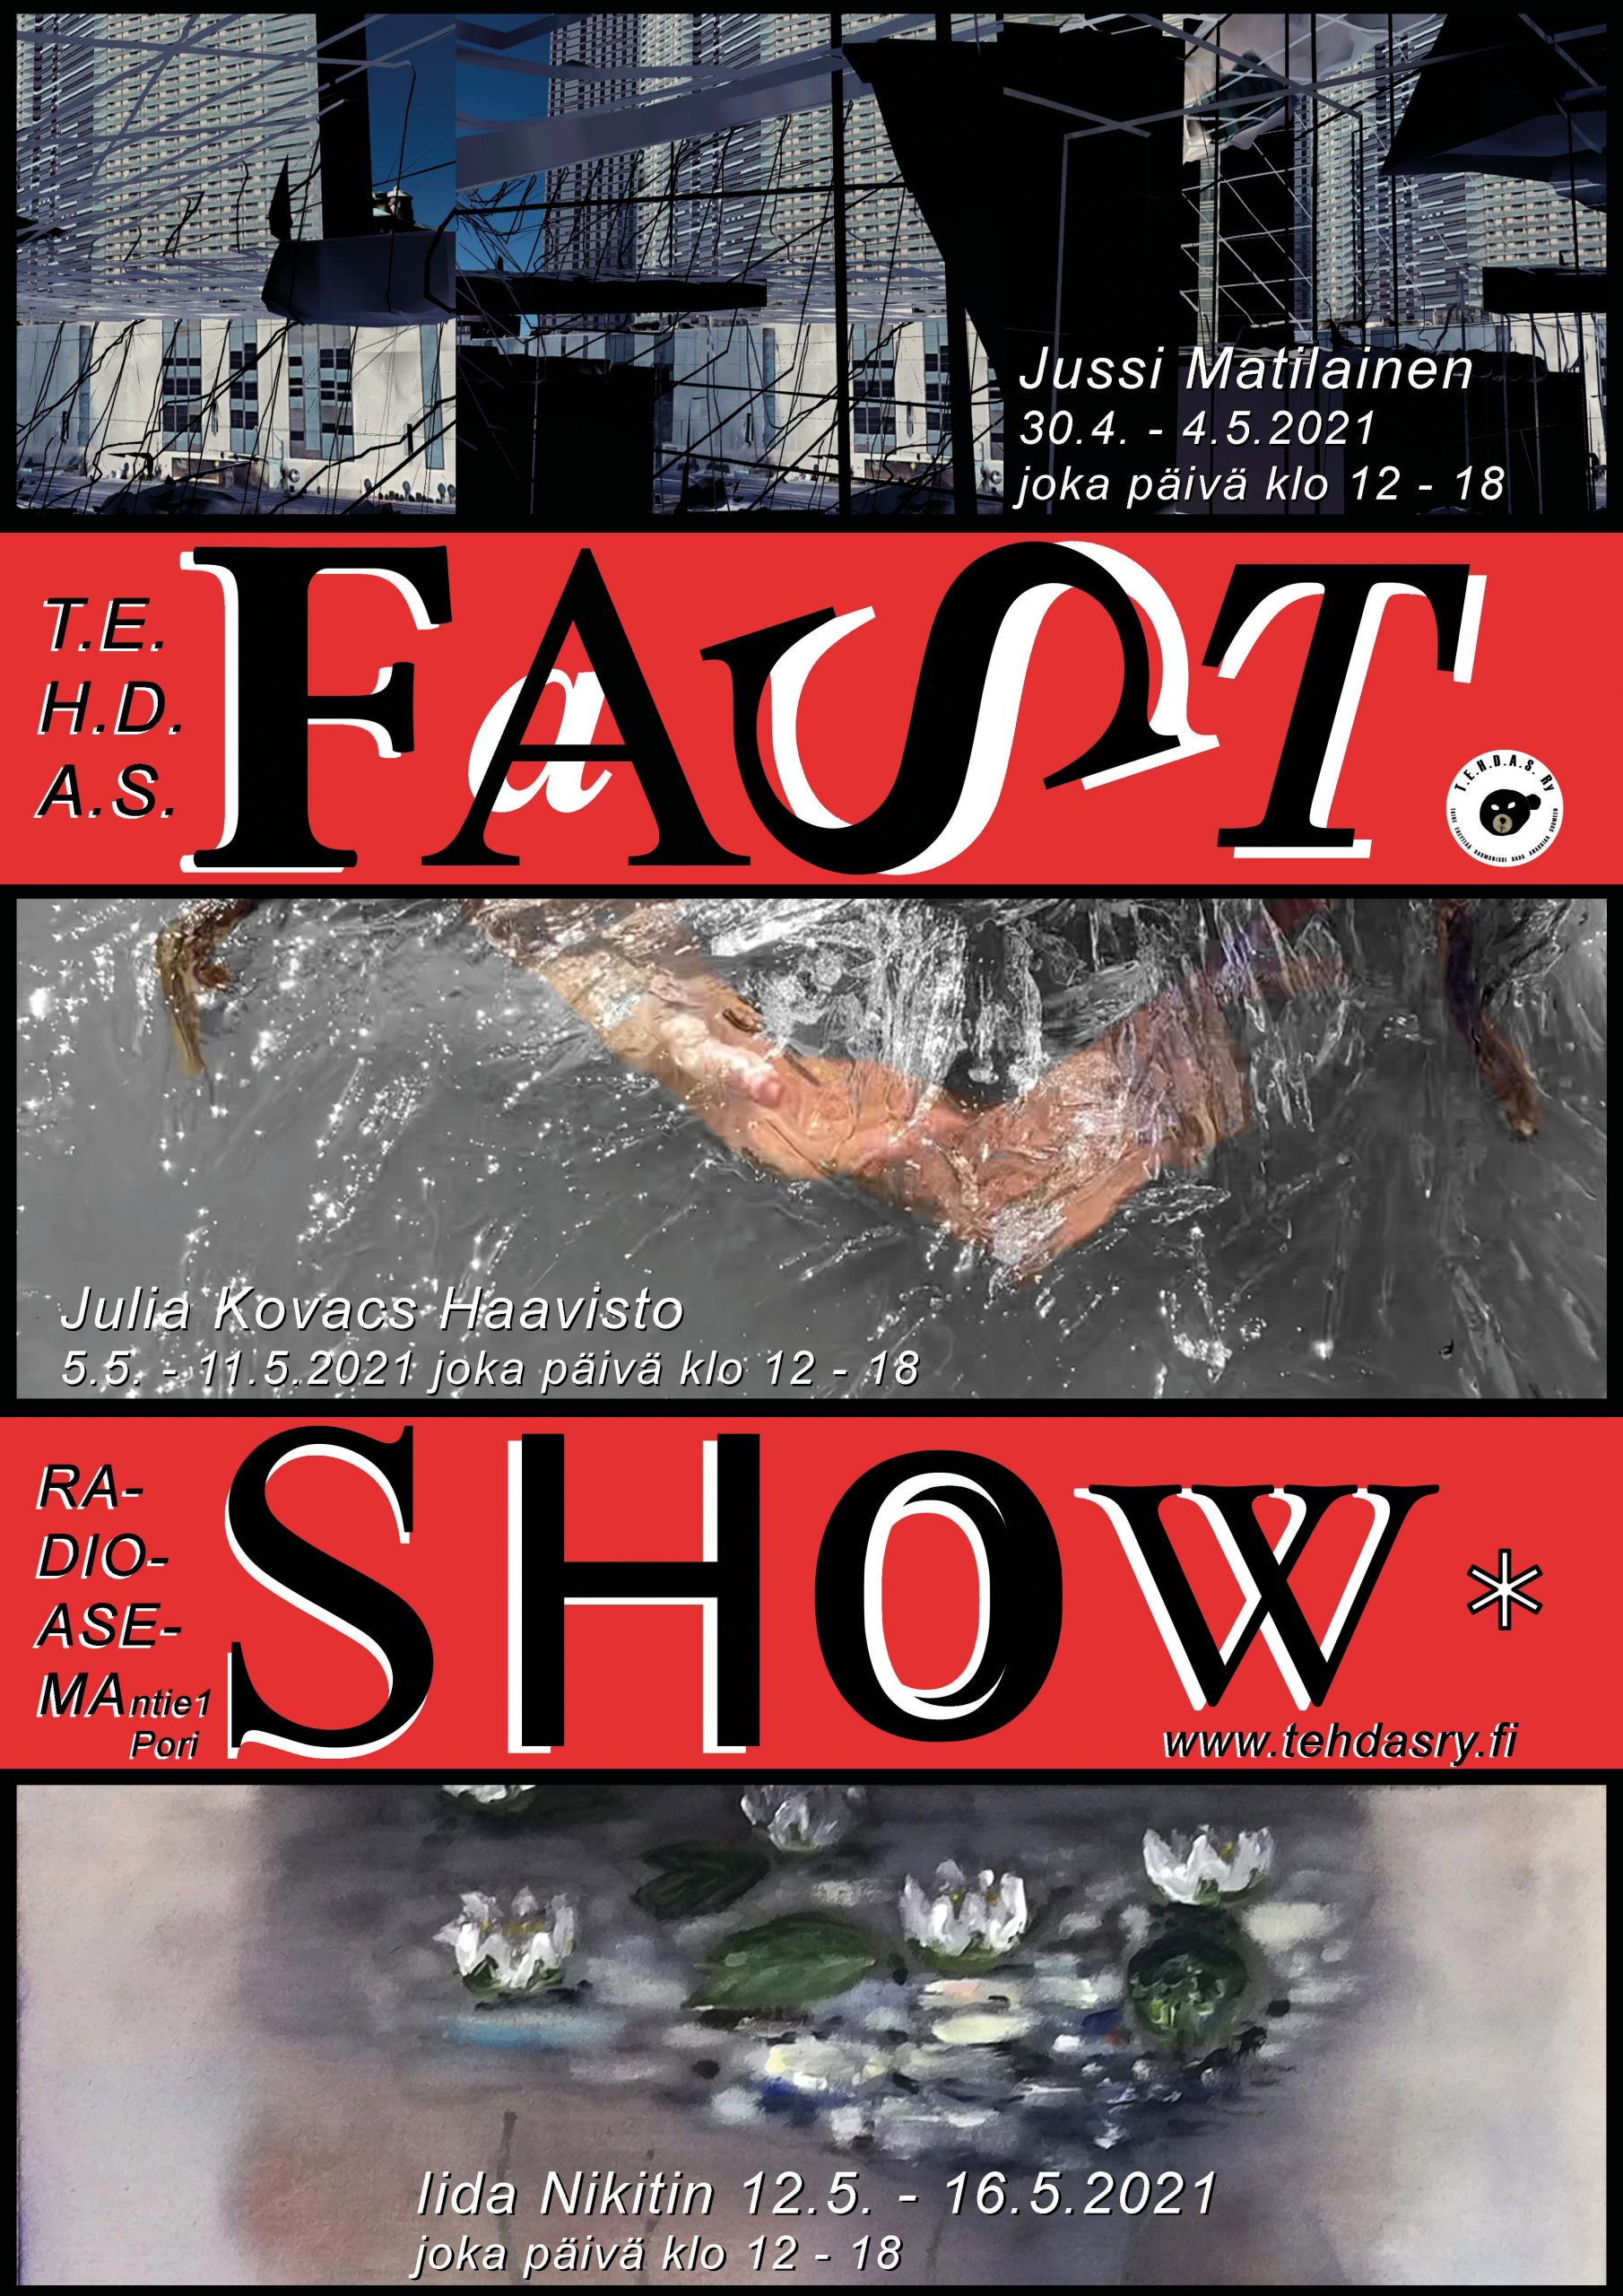 T.E.H.D.A.S. Fast Show